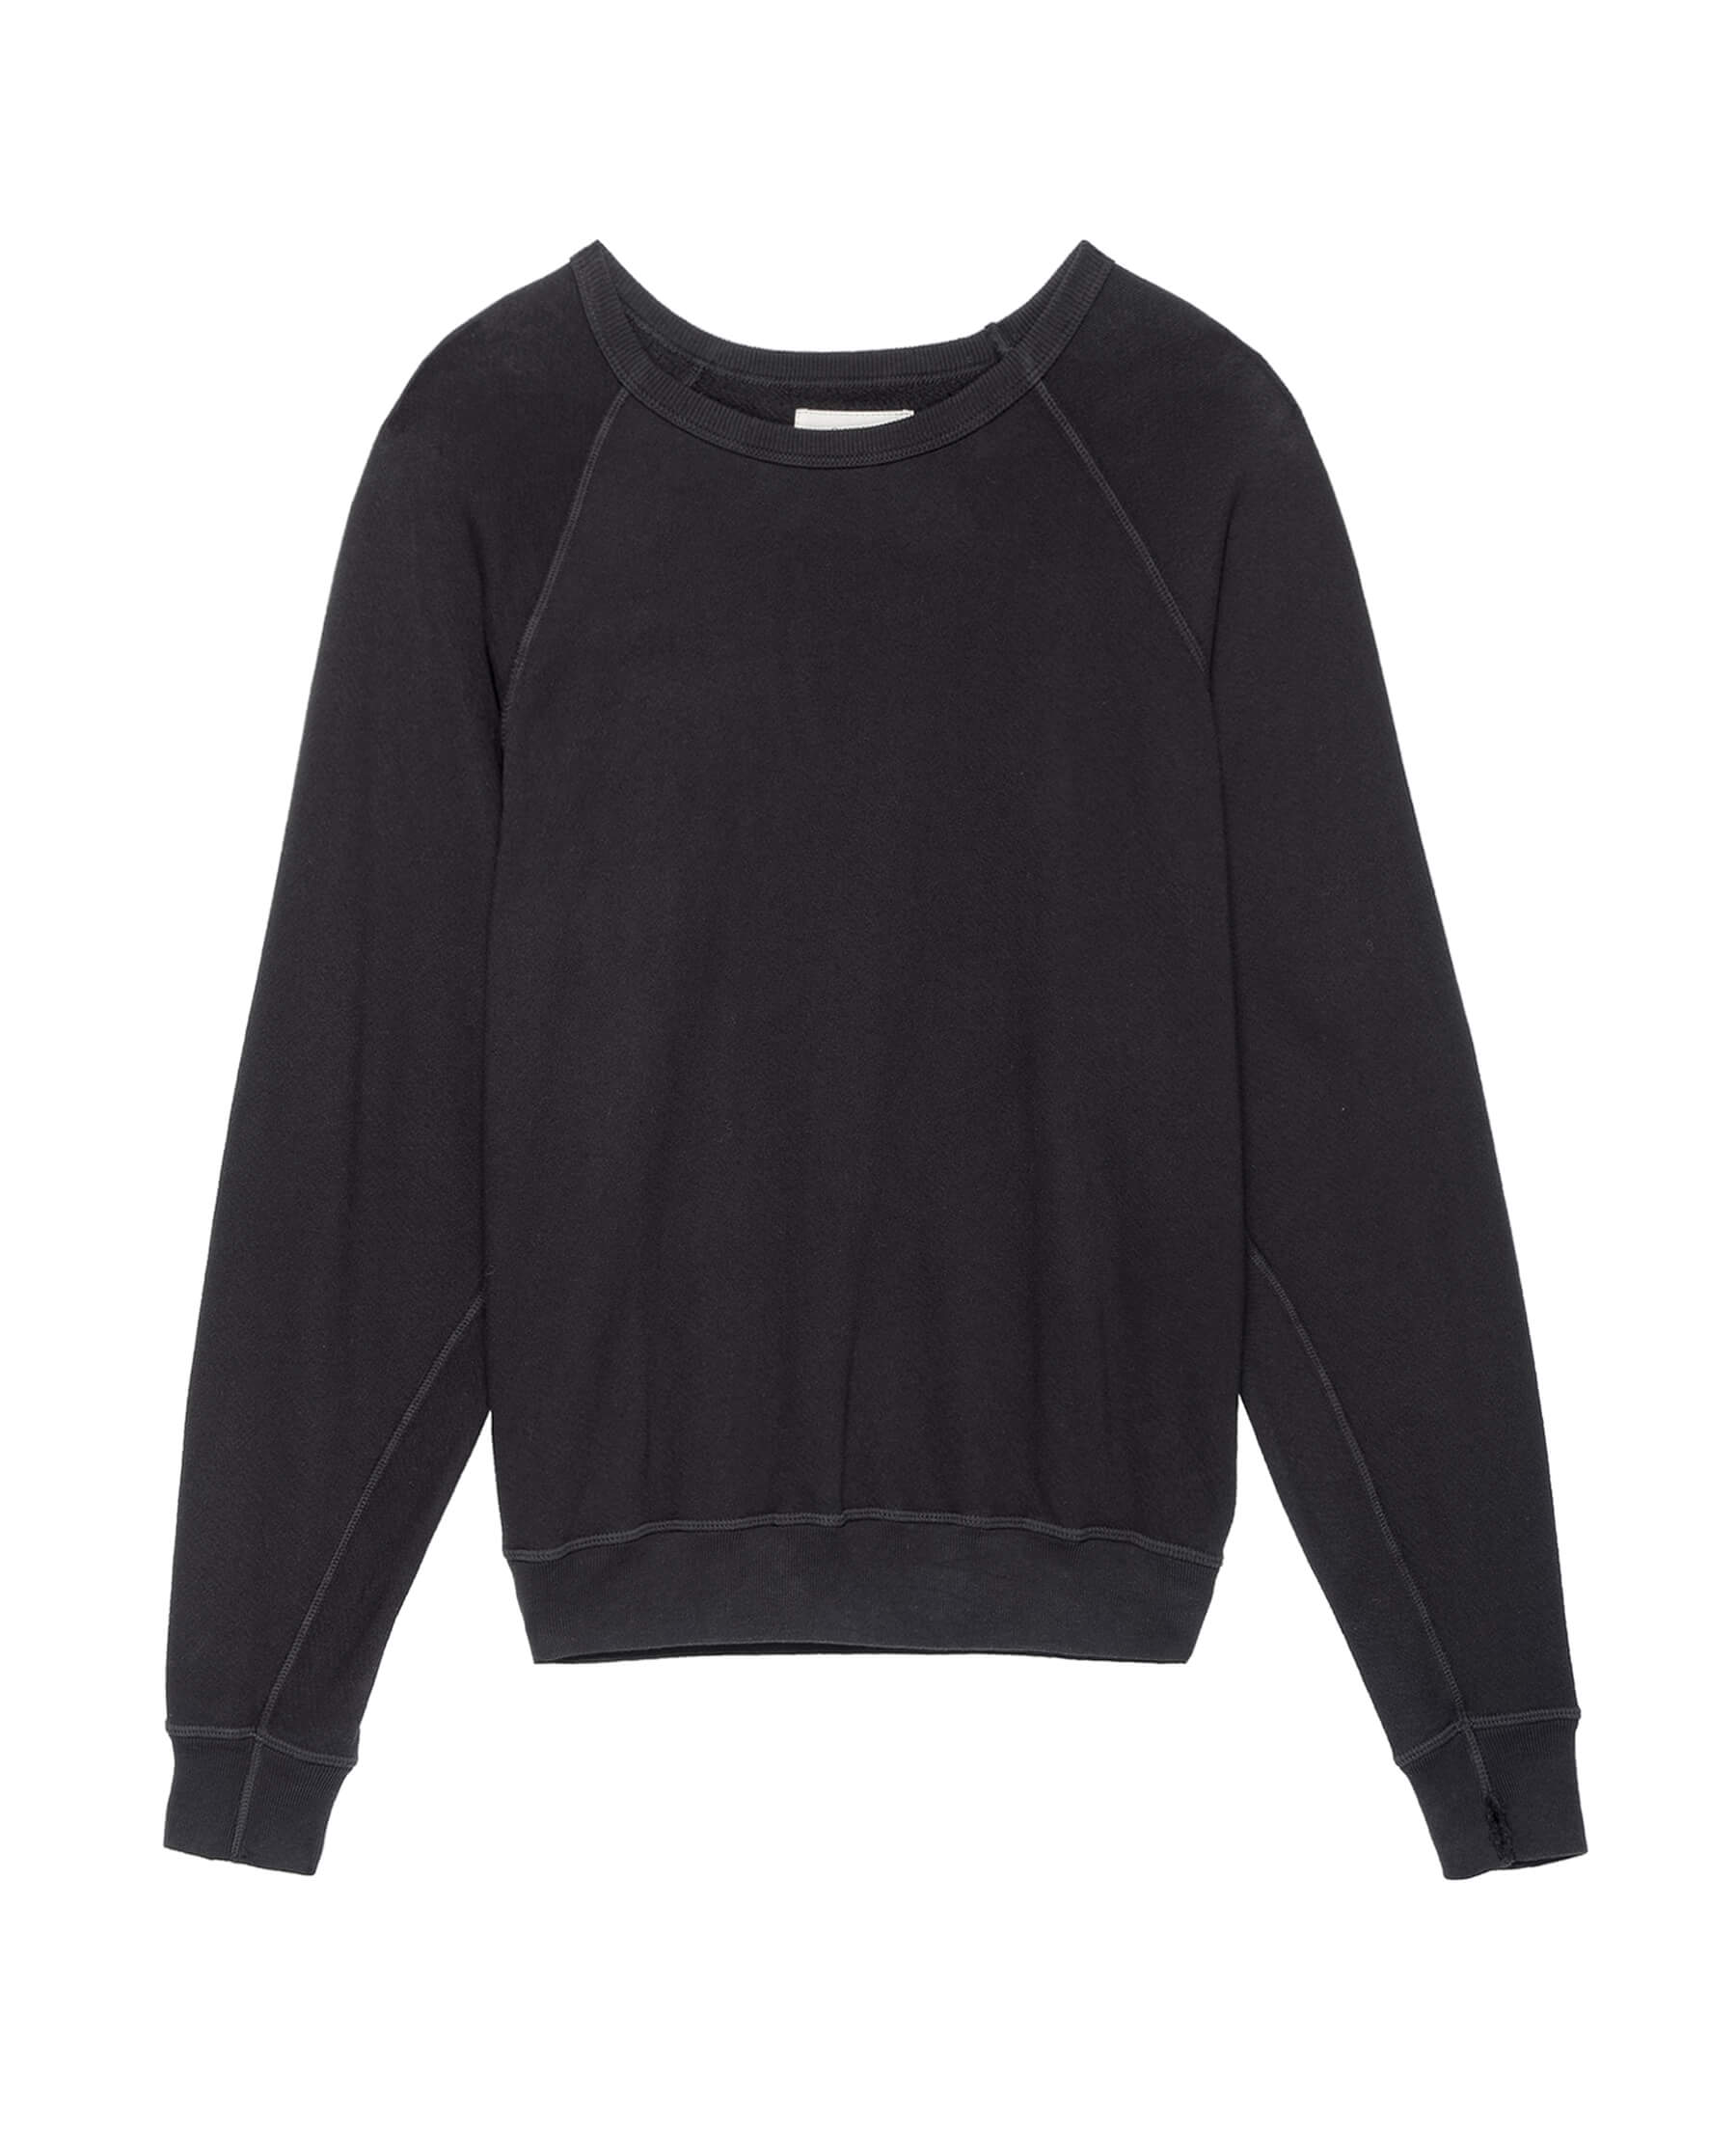 The Men's College Sweatshirt. -- ALMOST BLACK